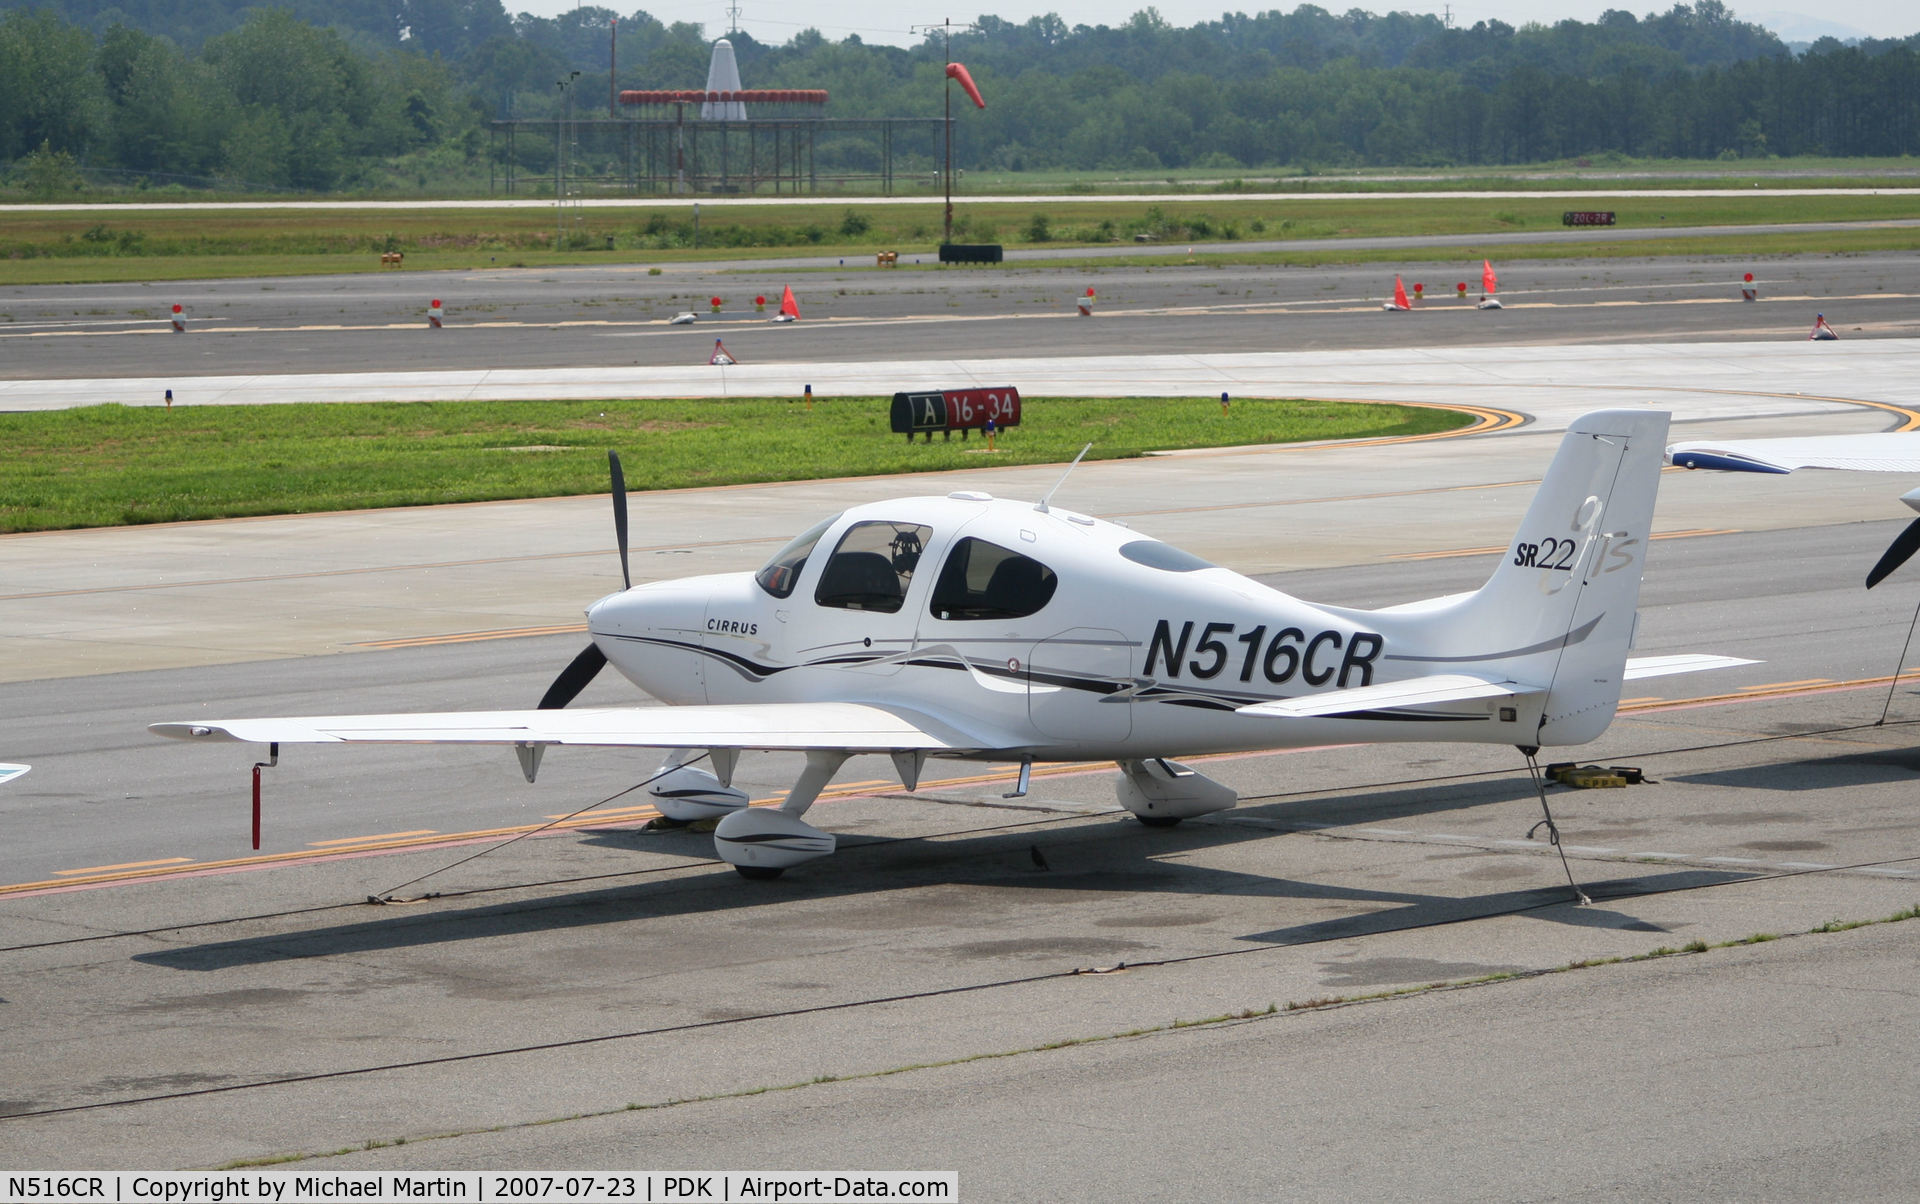 N516CR, 2005 Cirrus SR22 GTS C/N 1309, Tied down @ Epps Air Service